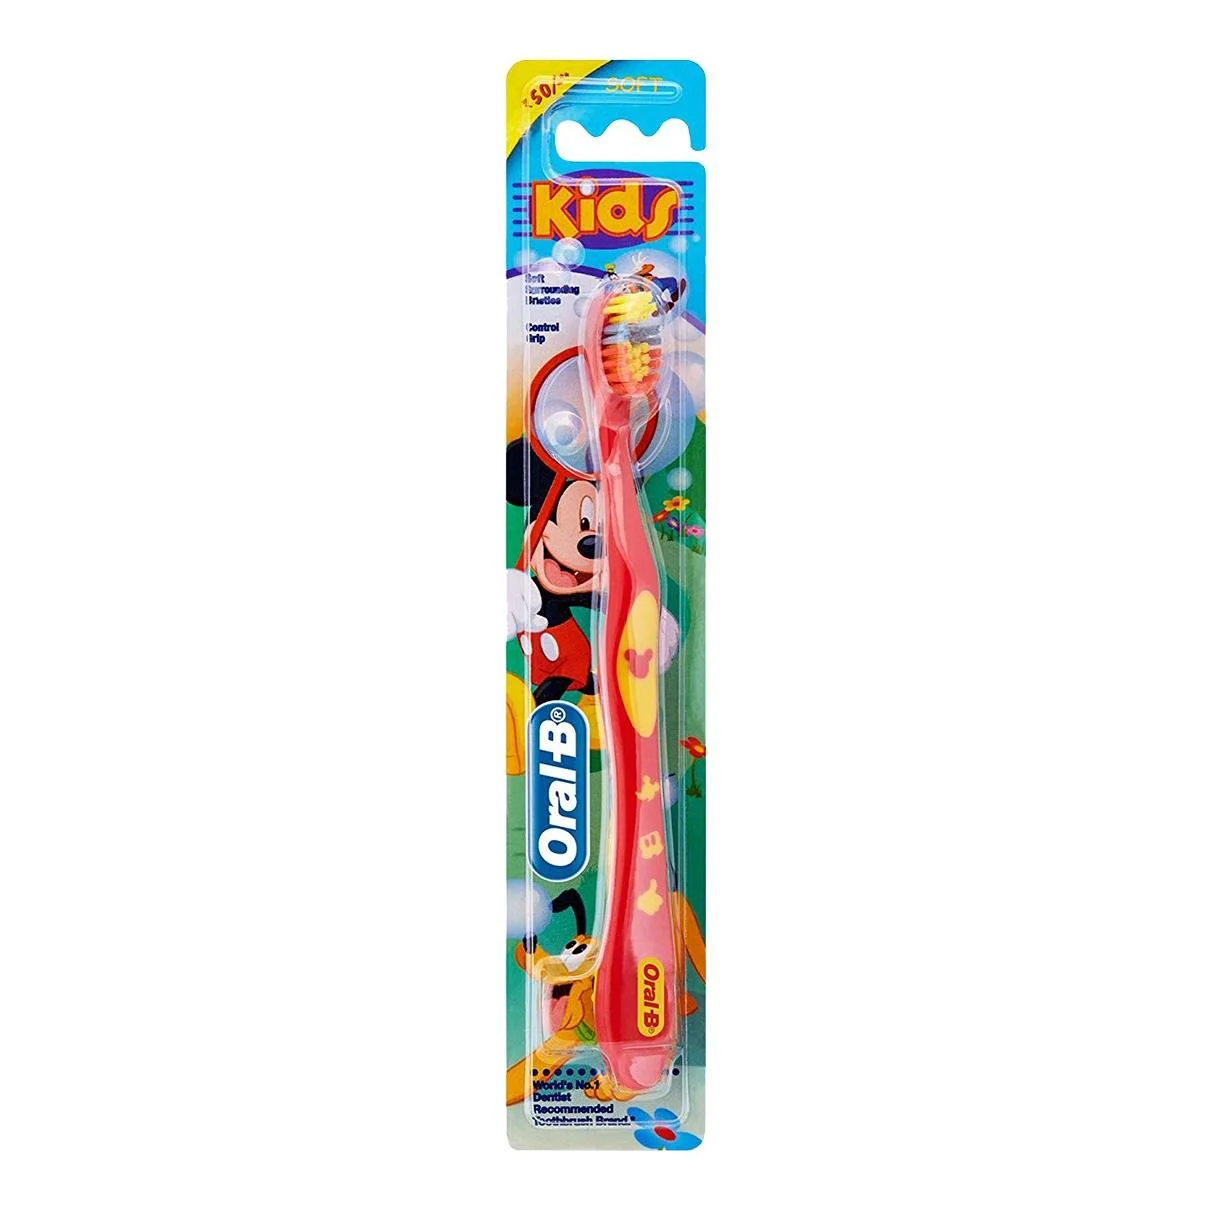 Oral-B Kids Manual Toothbrush